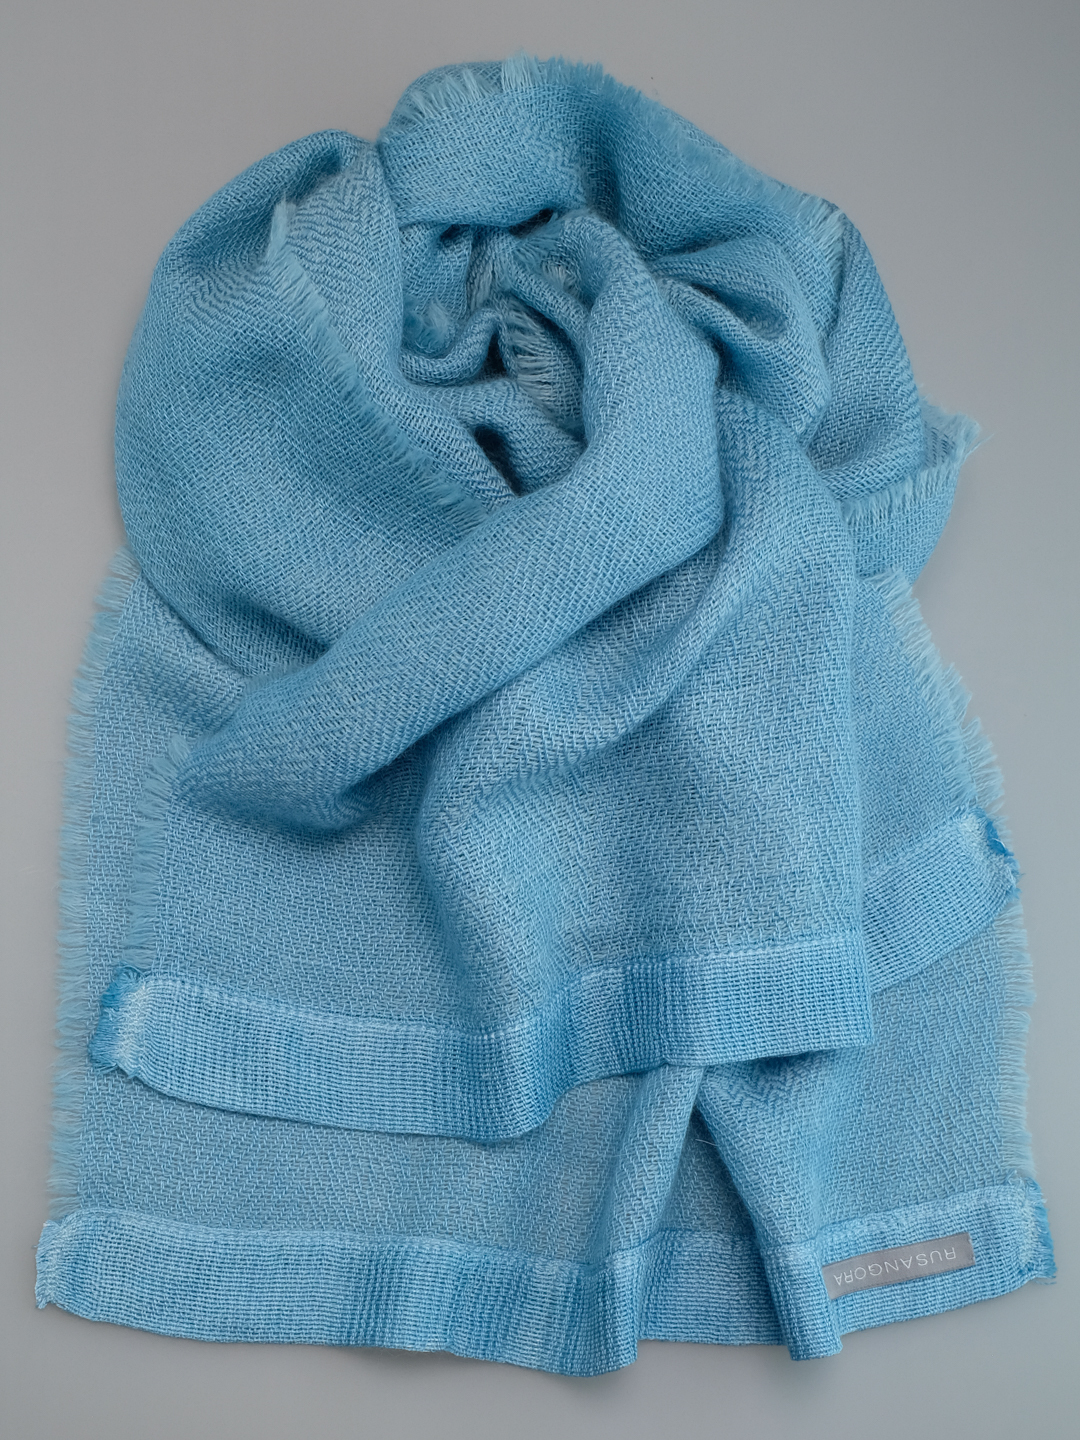 Шарф тканый голубой женский ангора шелк шерсть в подарок